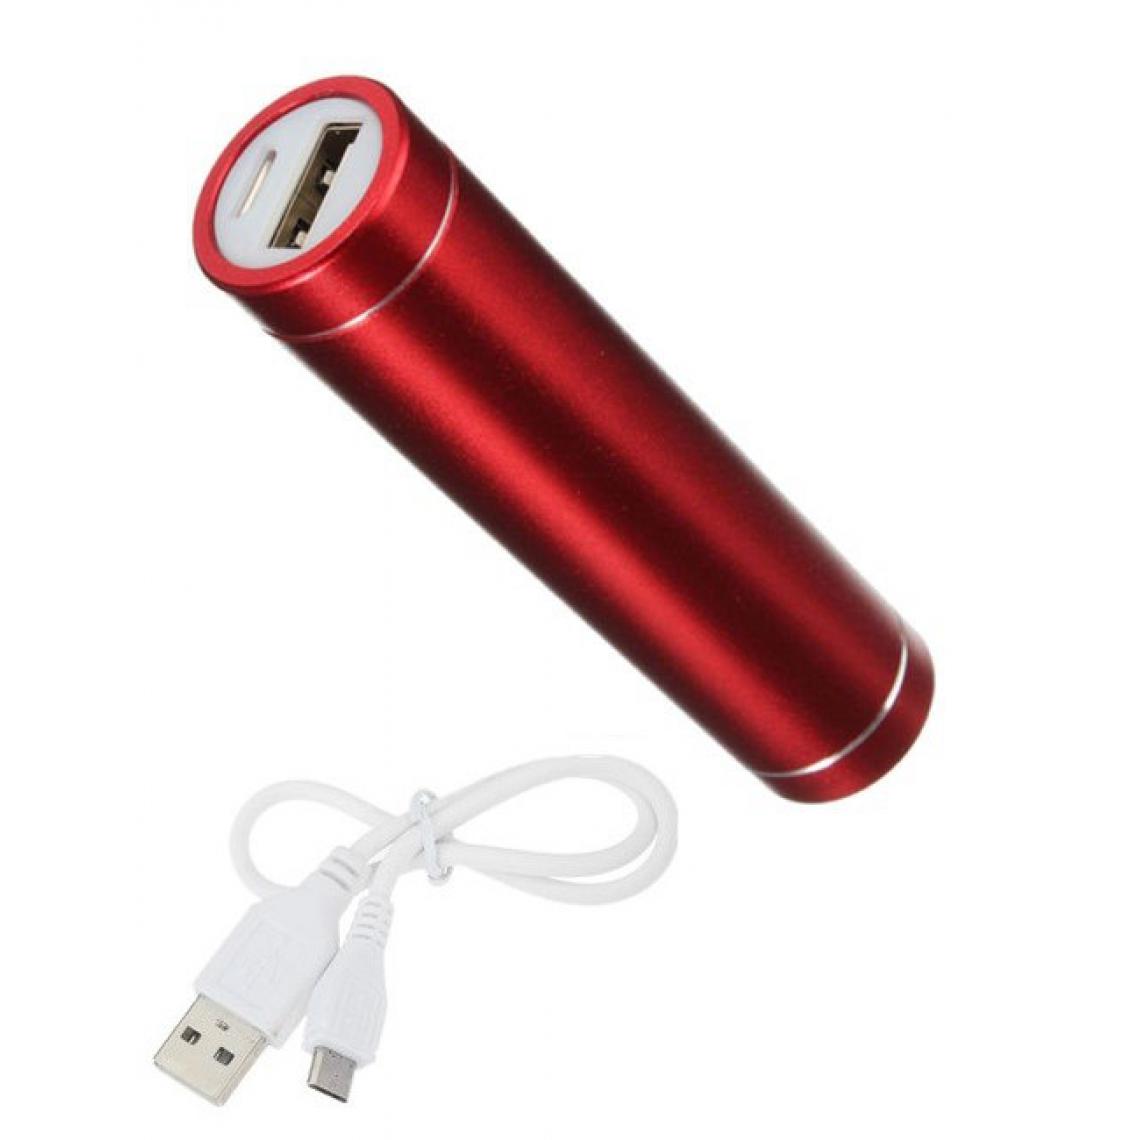 Shot - Batterie Chargeur Externe pour ASUS ROG Phone II Power Bank 2600mAh avec Cable USB/Mirco USB Secours Telephone (ROUGE) - Chargeur secteur téléphone